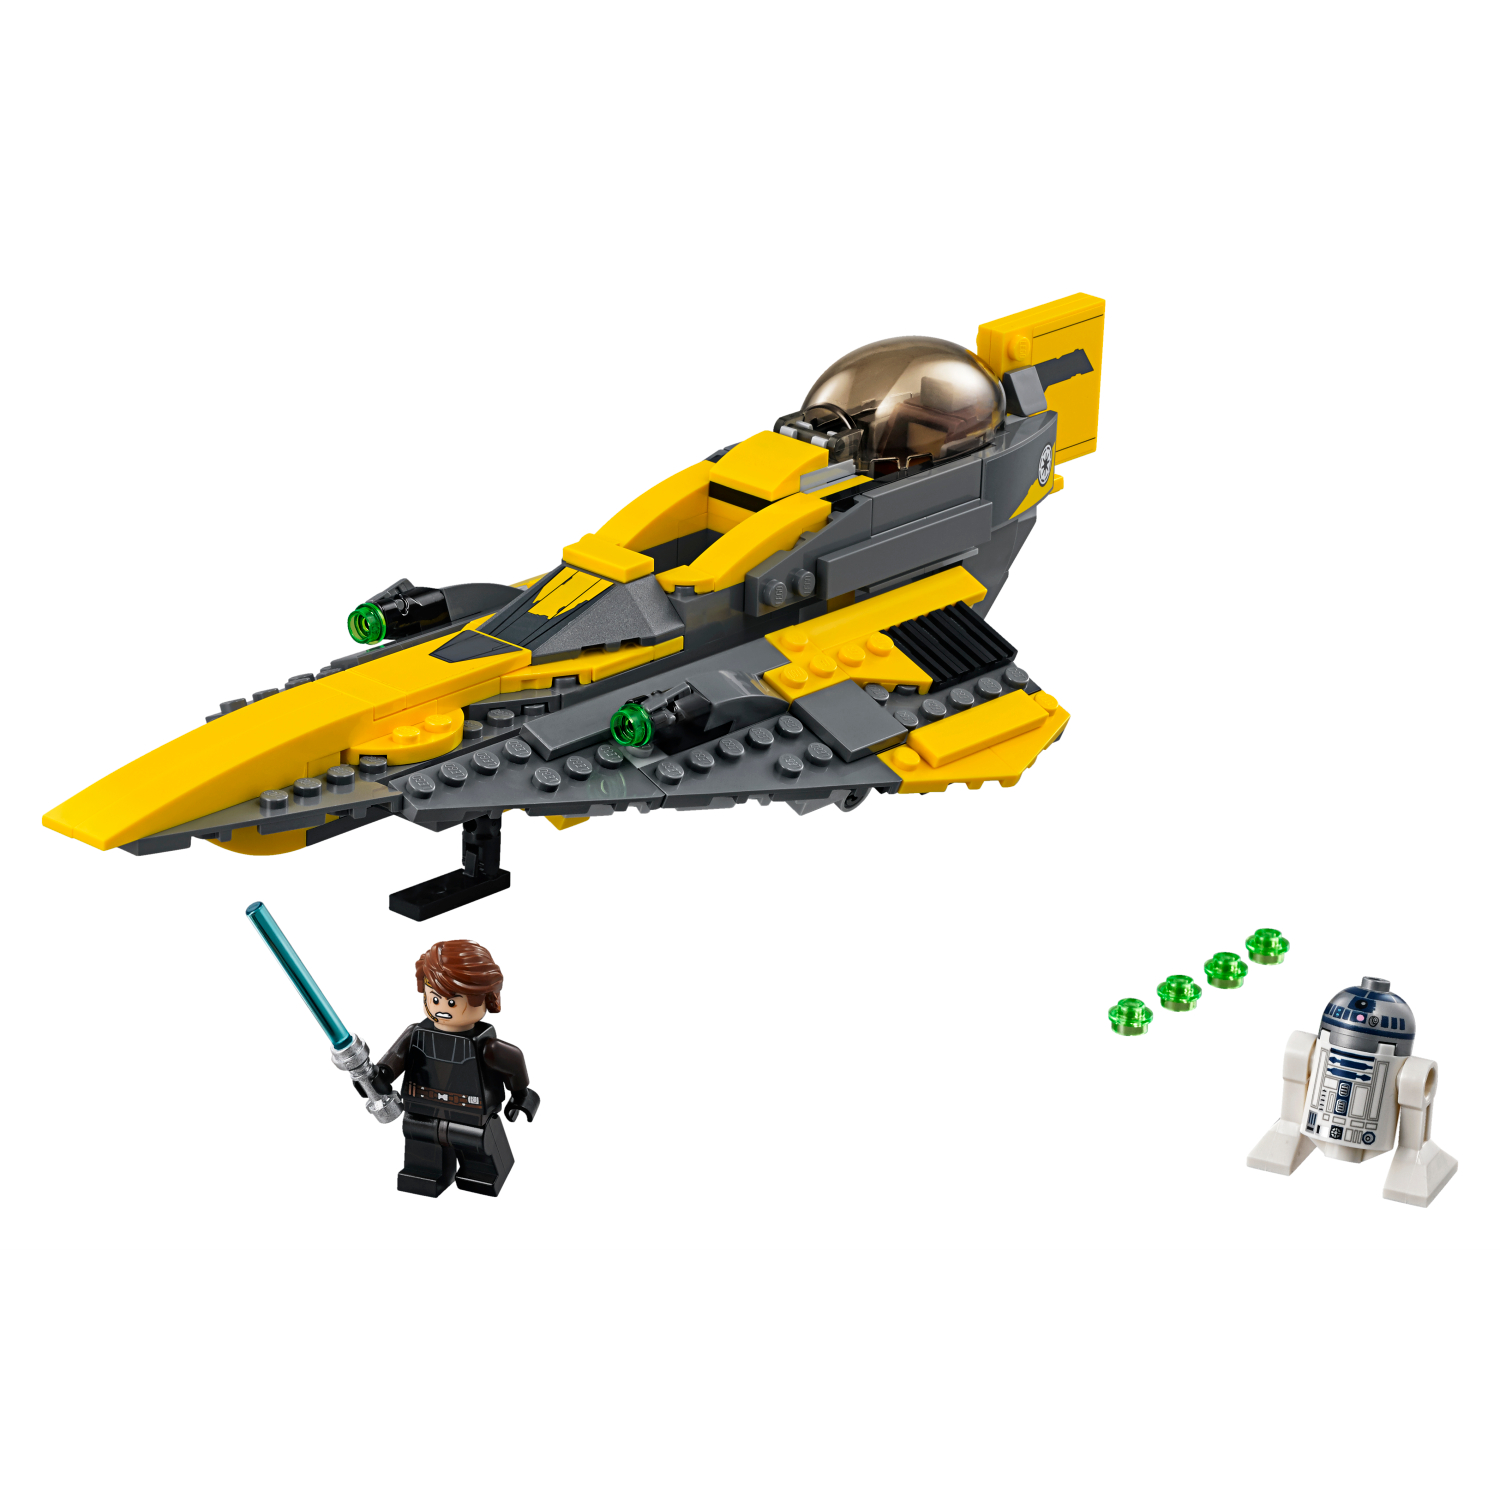 75214 Anakinov Jedi Starfighter™